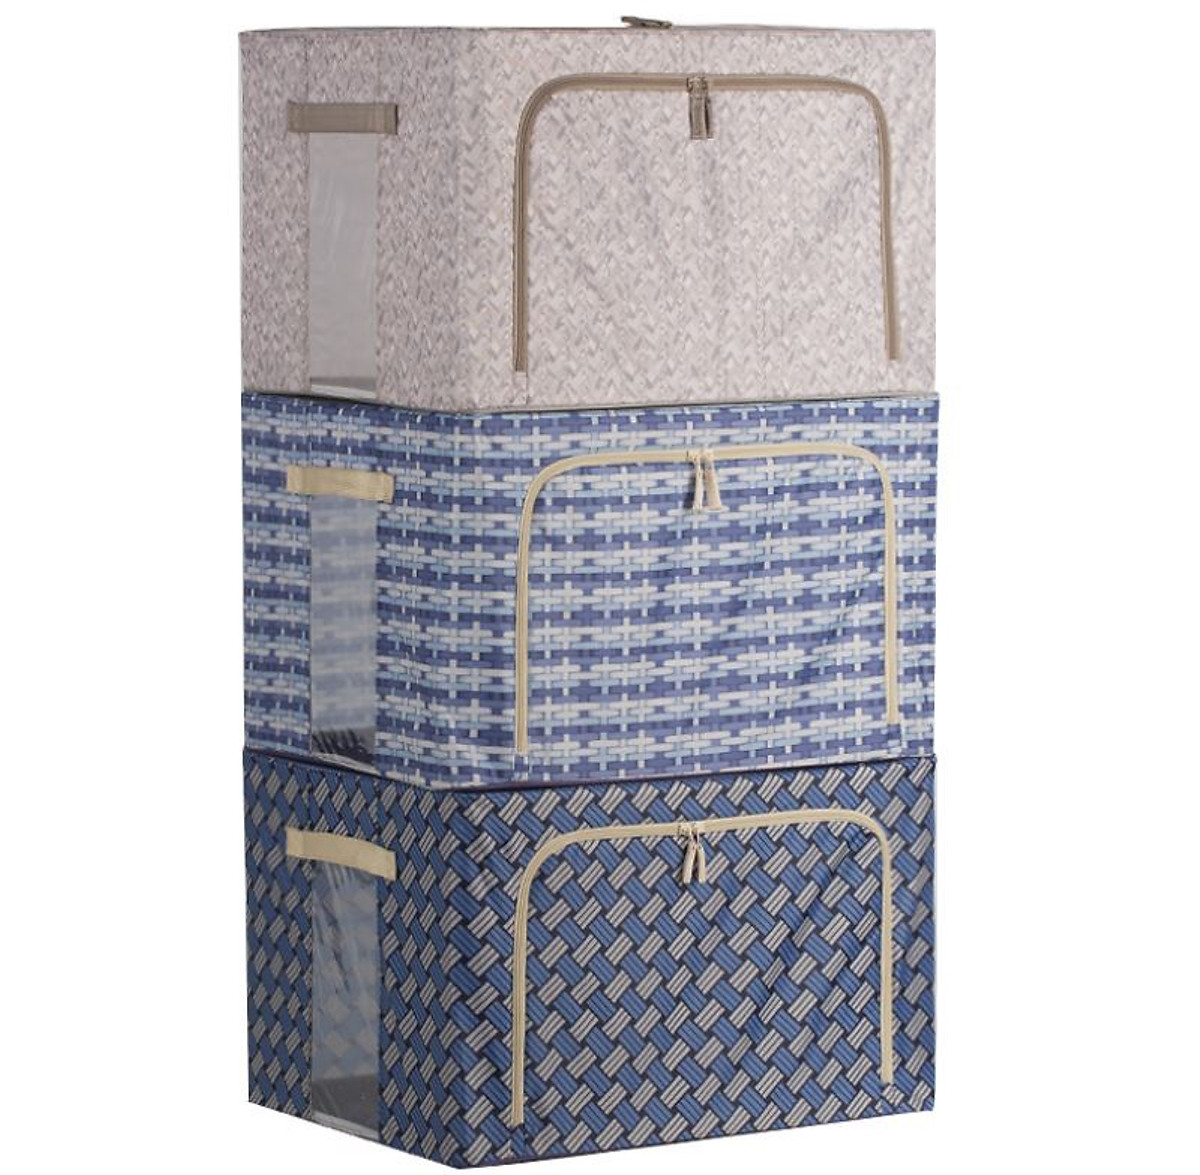 Túi vải đựng quần áo chăn màn khung sắt gấp gọn cỡ đại 66L - Túi vải đựng đồ đa năng chống thấm nhiều mẫu mã, họa tiết cao cấp - Hàng chính hãng D Danido